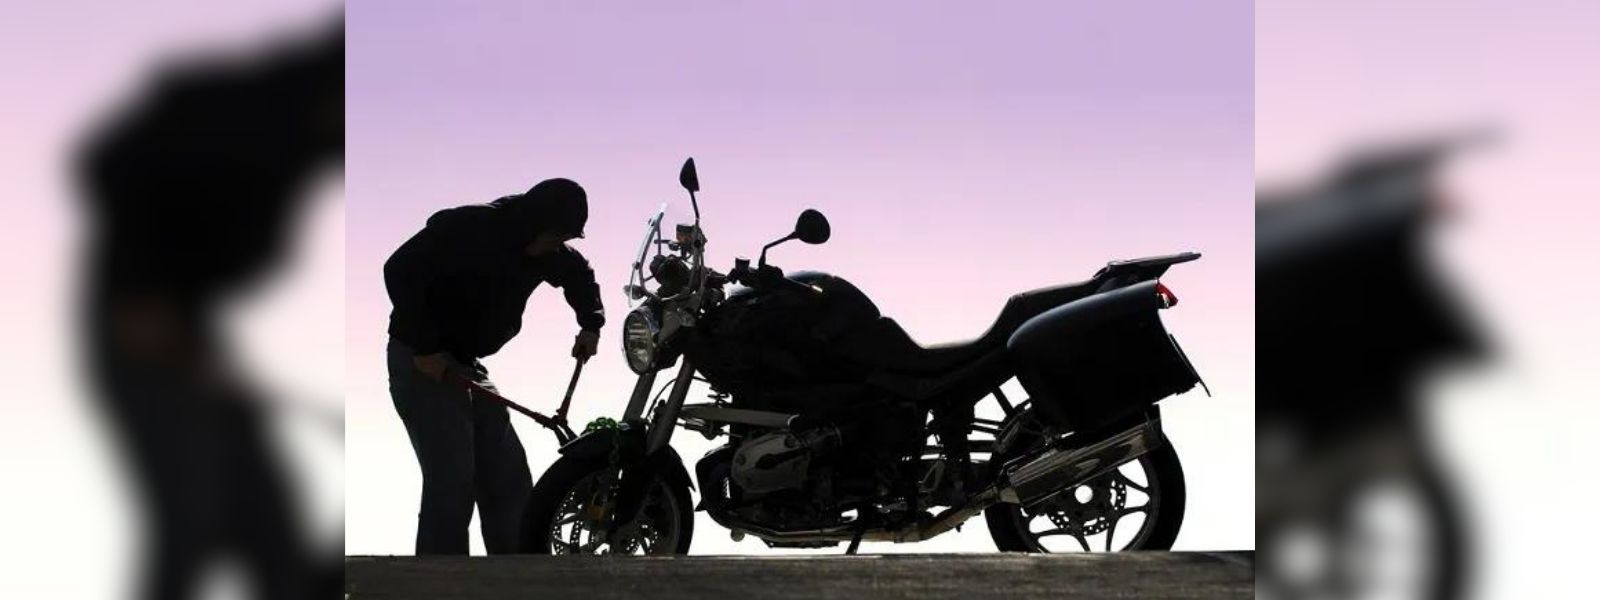 Motorbike thief arrested in Piliyandala